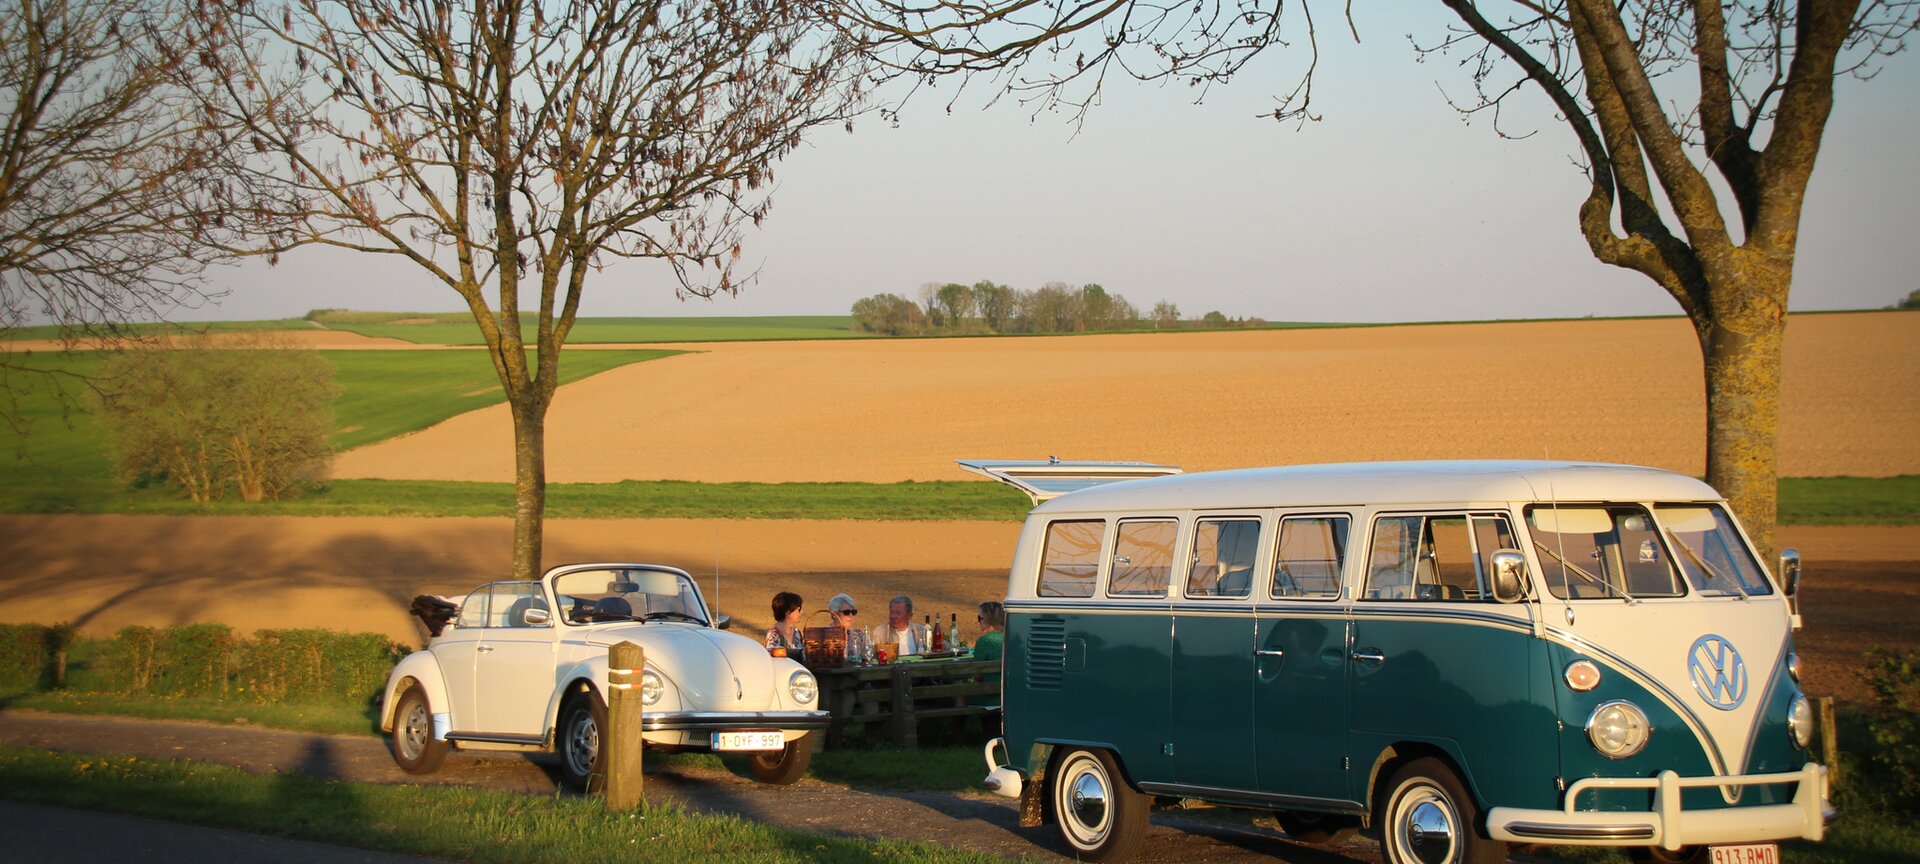 Toeren in Haspengouw met een oldtimer VW t1 bus - toeren in haspengouw vw bus